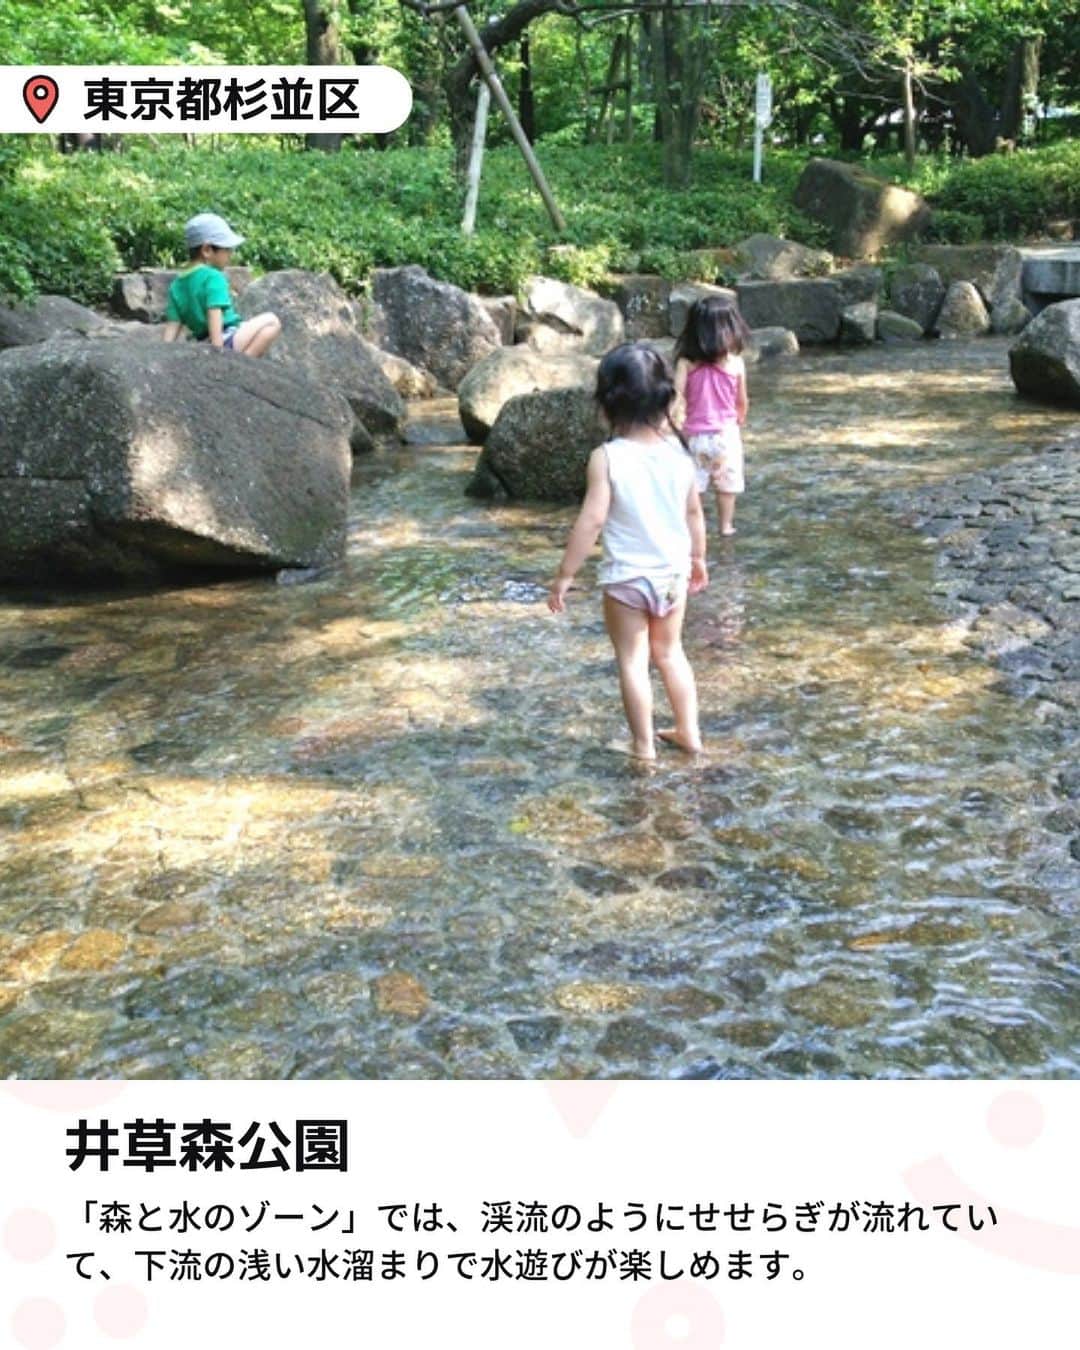 iko-yo（いこーよオフィシャル）さんのインスタグラム写真 - (iko-yo（いこーよオフィシャル）Instagram)「今回「浅めで小さい子供も楽しい！　おすすめ無料水遊びスポット5選」をピックアップ！ @ikoyo_odekake に他の投稿も！ ーーーーーーーーーーーーーーーーーー 📍 東京都北区 【音無親水公園】 園の真上には3つの優美な曲線を描くアーチ型の音無橋が架かっており、春には桜が、秋には紅葉が楽しめます。 遊具はありませんが、人工のせせらぎがあり、水遊びができます。水車や橋、岩までも配された100mほどせせらぎは、周りを囲む木々の緑と相まって渓流のような趣きで、小さいながら滝もあります。水深は子供のひざくらいですが、水遊びを満喫するならやっぱり水着がベター。  📍東京都杉並区 【下高井戸おおぞら公園】 「下高井戸おおぞら公園」は、京王線「桜上水駅」から徒歩約8分の場所にある公園です。 公園内には、広々とした芝生広場のほか、一風変わった遊び甲斐があるネット遊具があり、体を使って思いっきり遊べます。その遊具エリアの横に人工の水場があり、夏は水遊びが楽しめます。水深が浅く小さな子供も安心して楽しめますよ。  📍東京都足立区 【舎人公園】 この公園には、水遊びできる場所が2カ所あります。１つは、駅を降りてすぐの入口付近から、大小の噴水をつなぐ浅い水路。 もう1つは、大きな池の先にある、「浮球の池」と呼ばれる大きなじゃぶじゃぶ池です。丘から滑り降りるウォータースライダーが子供に大人気で、夏休み期間中に開放されます。  📍東京都墨田区 【大横川親水公園】 ゾーンによって、釣り堀や噴水、ローラー滑り台などの遊具、橋や鉄橋をくぐるトンネルがあったり、異なる見どころがあるのが魅力。子供連れで楽しめる散歩道です。 とくに、平川橋〜横川橋間が、じゃぶじゃぶ池として整備されていて、水遊びしやすくなっています。 桜や木瓜・白木蓮に菖蒲など、四季の花々が咲き、東京スカイツリーも見えますよ。  📍東京都杉並区 【井草森公園】 園内は、広場で走ったり遊具で遊べる「原っぱゾーン」、築山と池が楽しい「森と水のゾーン」、サッカーなどが人気の「多目的運動場ゾーン」に分かれています。 夏場に水遊びができるのは「森と水のゾーン」。滝から落水して渓流のようにせせらぎが流れていき、下流の浅い水溜まりで水遊びができます。  ※2023年7月9日時点の情報です。 最新の情報は公式HPや「いこーよ」サイトでご確認ください。 ーーーーーーーーーーーーーーーーーーー おでかけ情報量は日本最大級！ 子どもとお出かけ情報サイト「いこーよ」 「親子でおでかけしたい場所」をご紹介させていただいています！  お子さんとのおでかけの思い出の写真を、このアカウントをフォローの上#いこーよ #いこーよおでかけ部 をつけてぜひ投稿してください。魅力的な写真は、いこーよ公式SNSで紹介させていただきます！  募集中タグ#いこーよ #いこーよおでかけ部  「子どもと行きたい！」と思ったら保存が便利！ プロフィールのURLから「いこーよ」のサイトに行くと、他の投稿やオトクな情報などが載っています♪ ☞ @ikoyo_odekake  #いこーよ #お出かけ #おでかけ #お出かけスポット #子連れ #子連れ旅行#こどものいる暮らし #子連れスポット  #子どもとおでかけ #杉並ママ #杉並旅行 #杉並観光 #足立観光 #足立旅行 #足立ママ #井草森公園 #大横川親水公園 #音無親水公園 #舎人公園 #下高井戸おおぞら公園 #無料水遊び #じゃぶじゃぶ池 #夏休み」7月18日 19時08分 - ikoyo_odekake